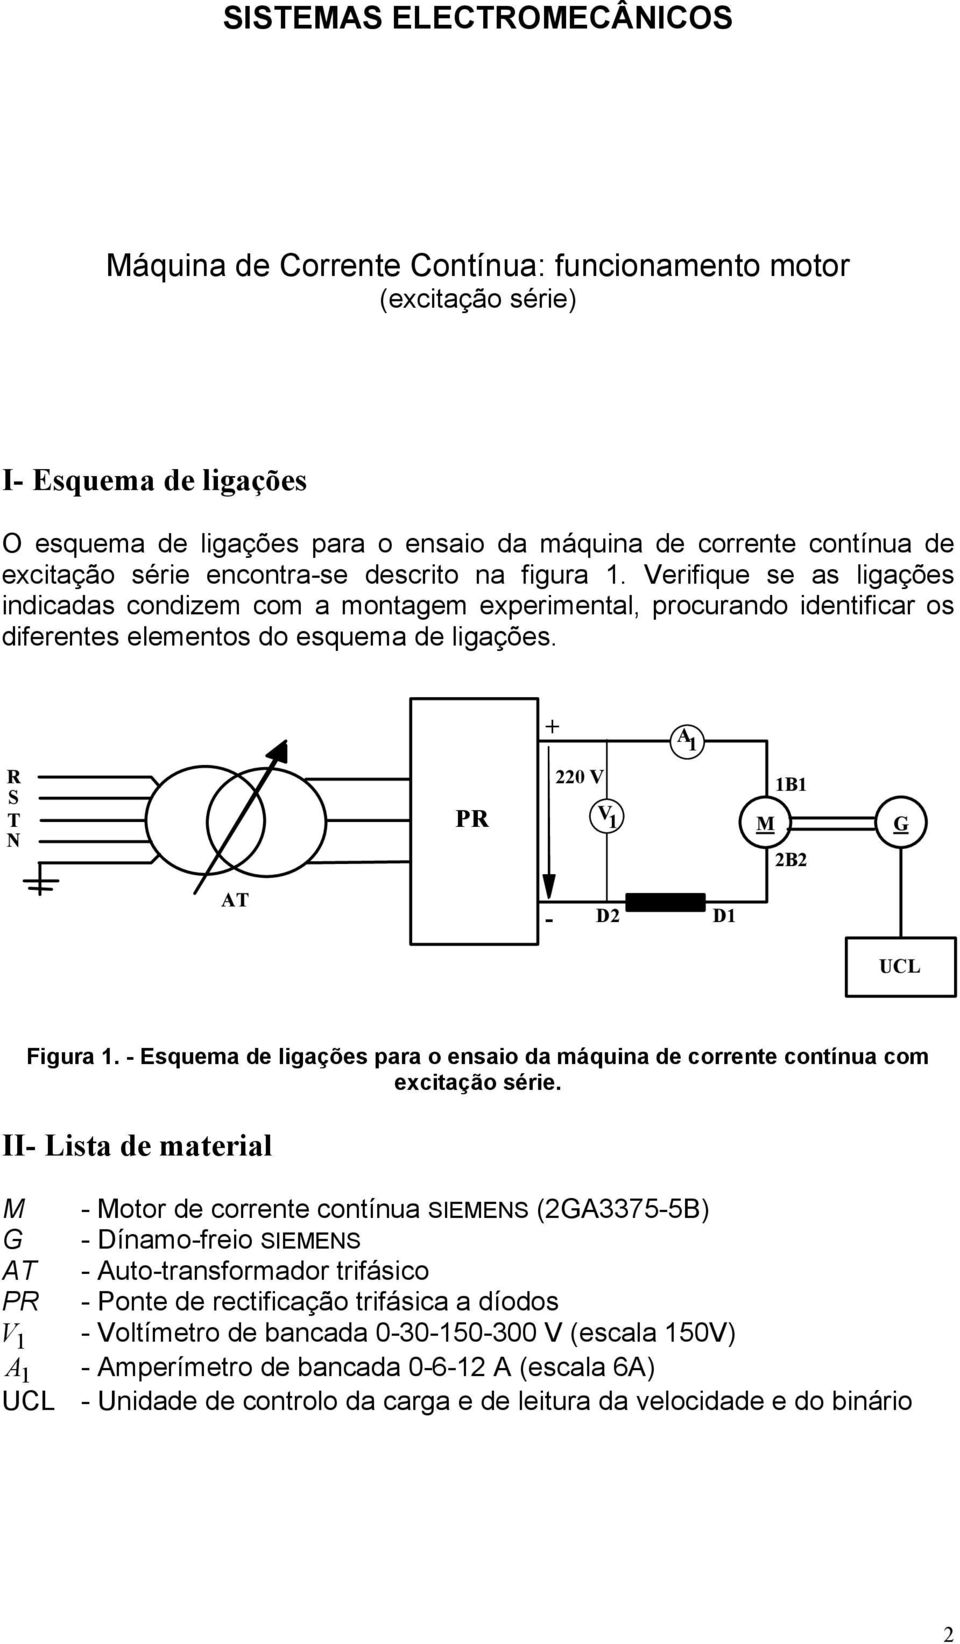 + A 1 R S T N PR 220 V V 1 M 1B1 2B2 G AT - D2 D1 UCL Figura 1. - Esquema de ligações para o ensaio da máquina de corrente contínua com excitação série.